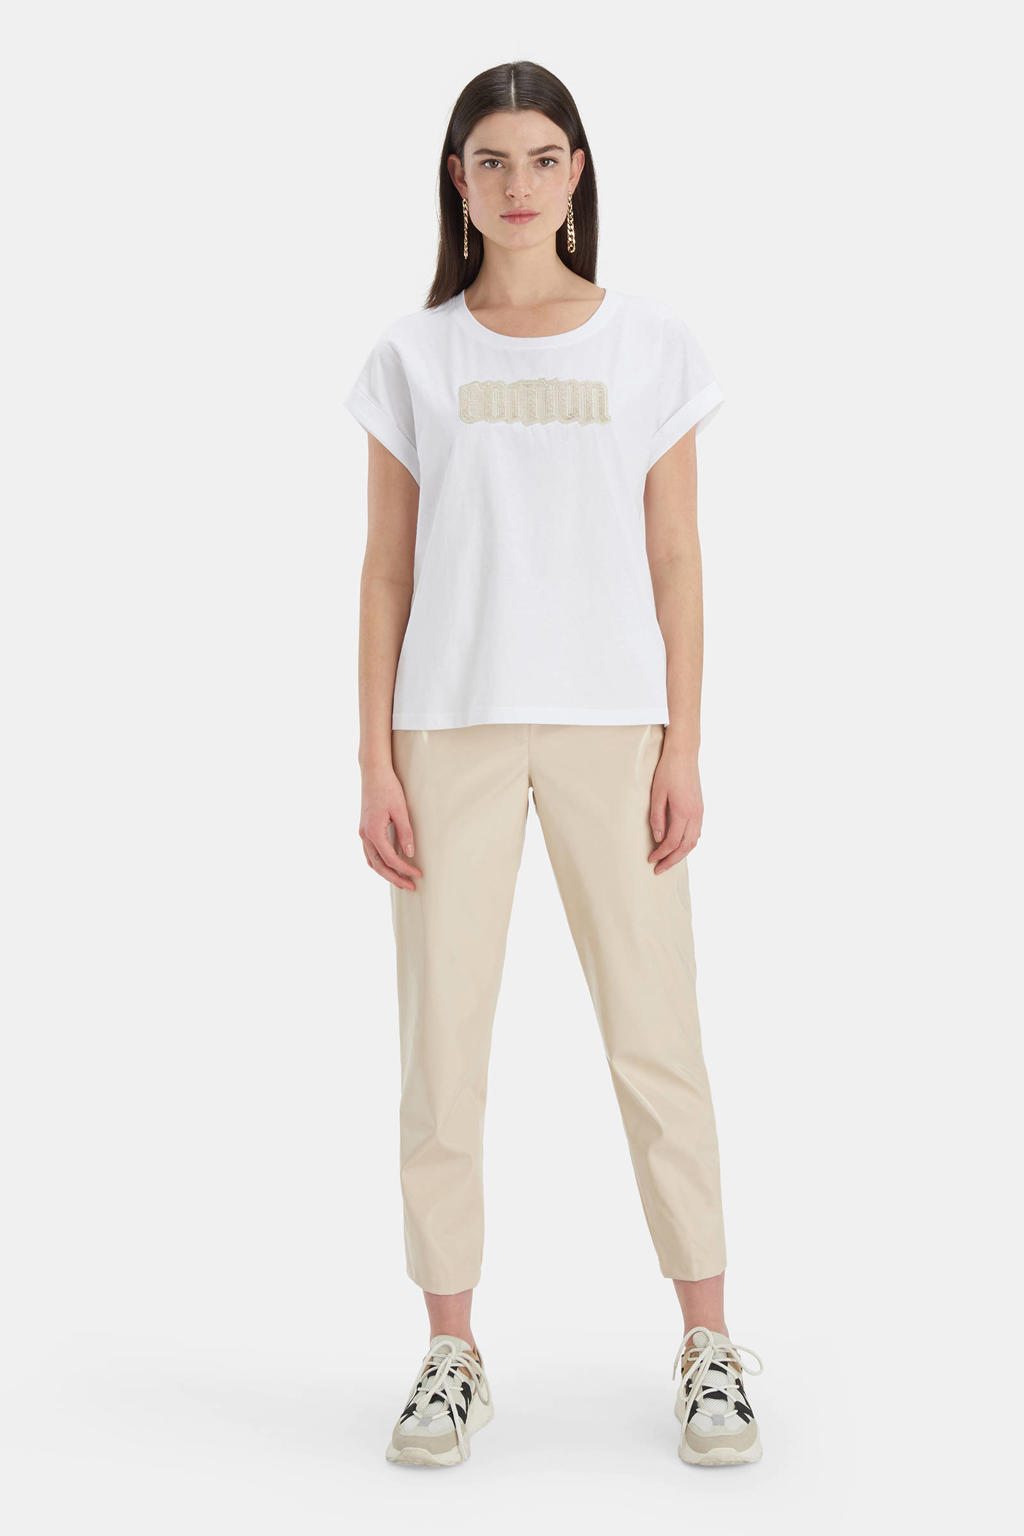 Witte dames Shoeby Eksept T-shirt Edition van katoen met korte mouwen, ronde hals en omslagdetail